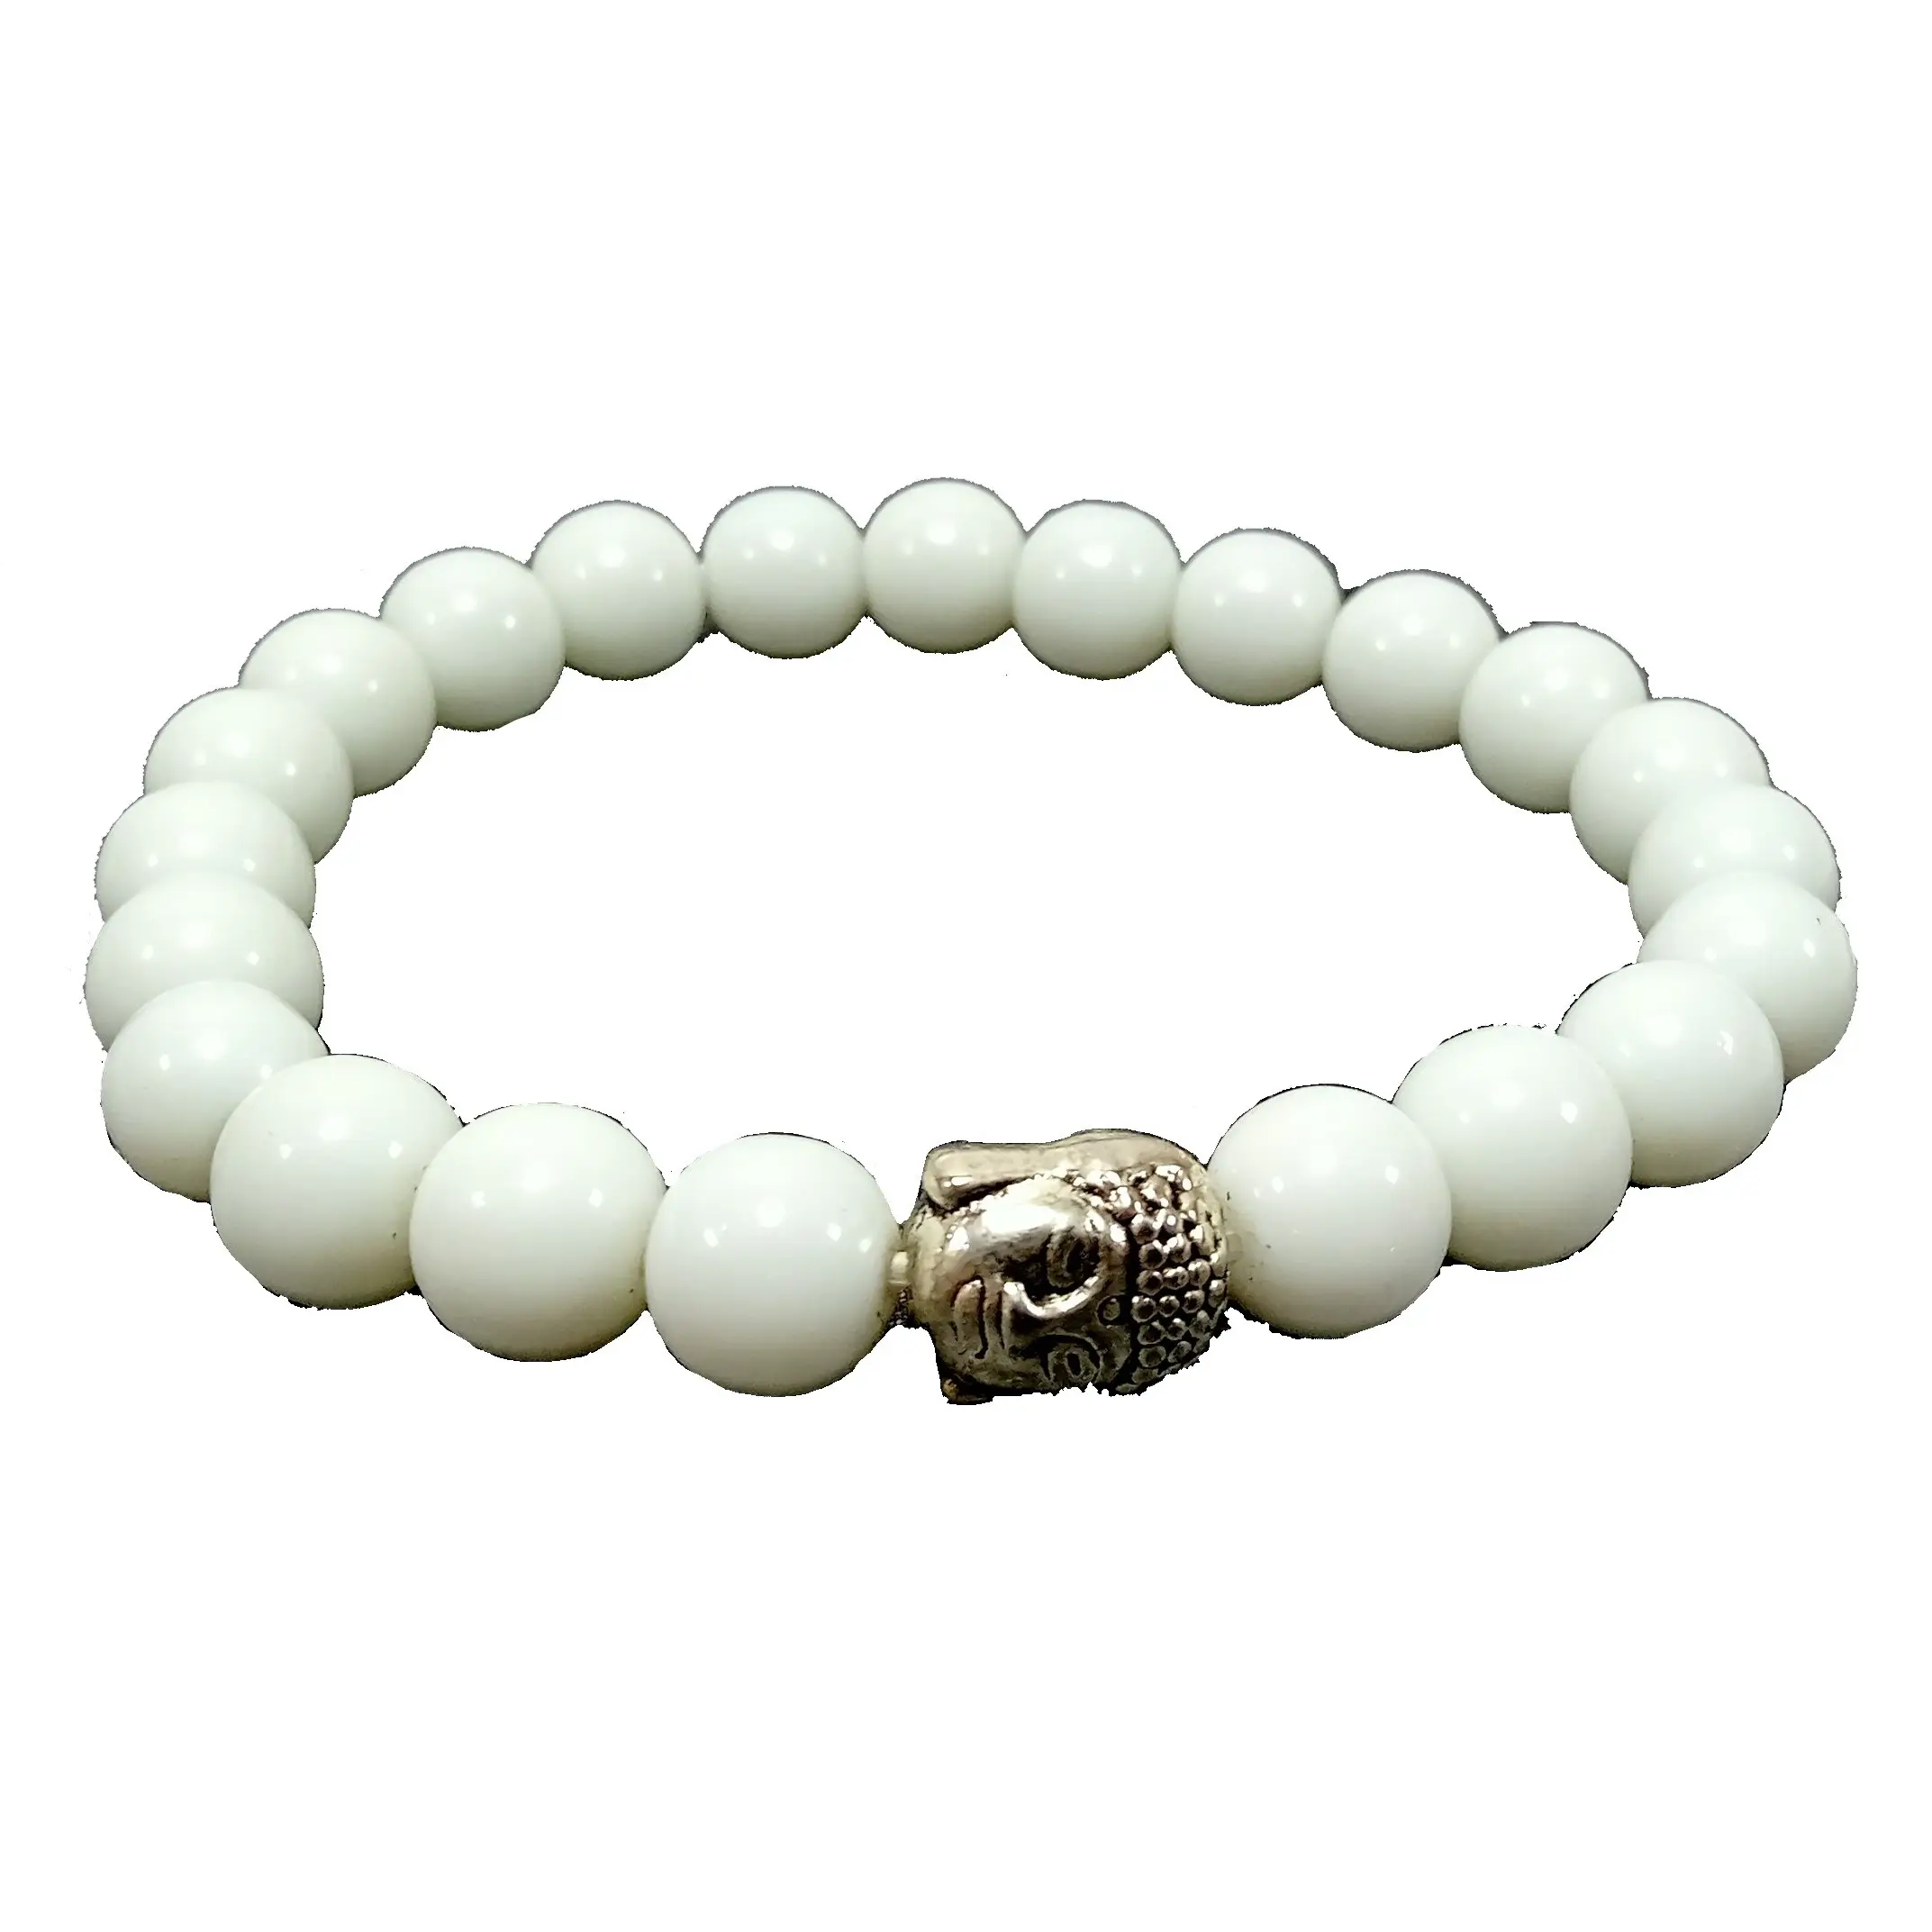 Gelang putih giok Buddha gelang manik-manik batu kristal batu permata mode perhiasan pria dan wanita hadiah energi meditasi